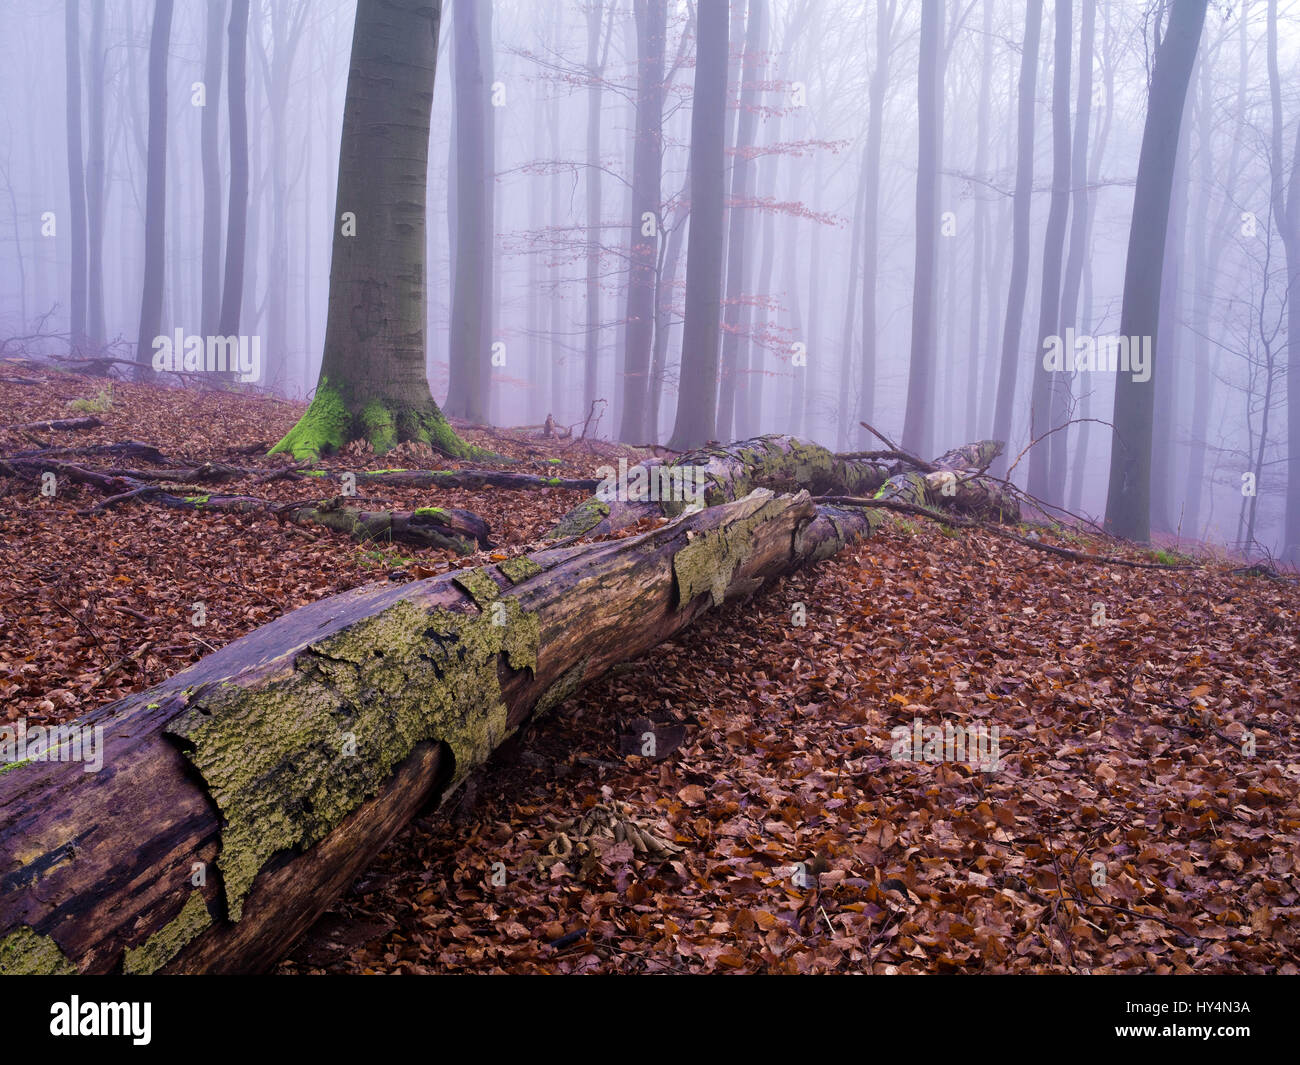 Allemagne, Brandebourg, Grumsiner Forst, le bois mort dans le brouillard Buchenwald, UNESCO World Heritage forêts de hêtre européen, Réserve de biosphère de l'UNESCO Schorfheide-Chorin Banque D'Images